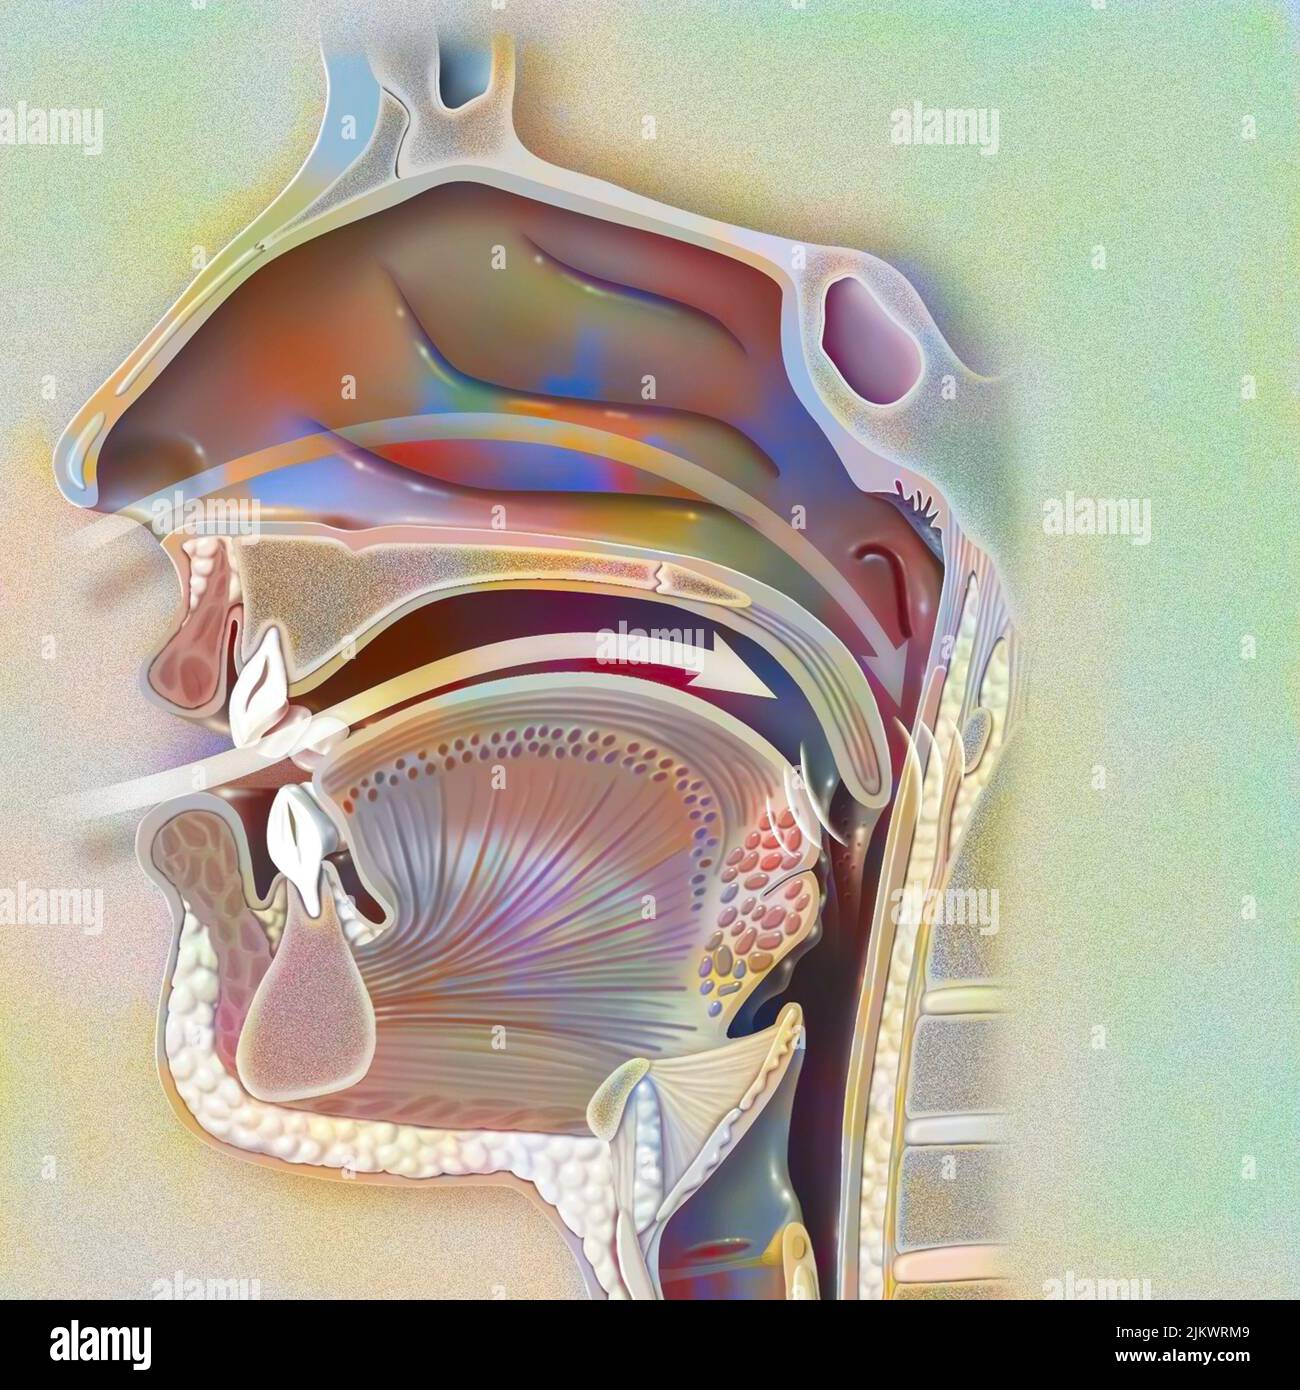 Voies aériennes (nasopharynx) dans le ronfleur, avec la cavité nasale, la paroi pharyngée et la uvula. Banque D'Images